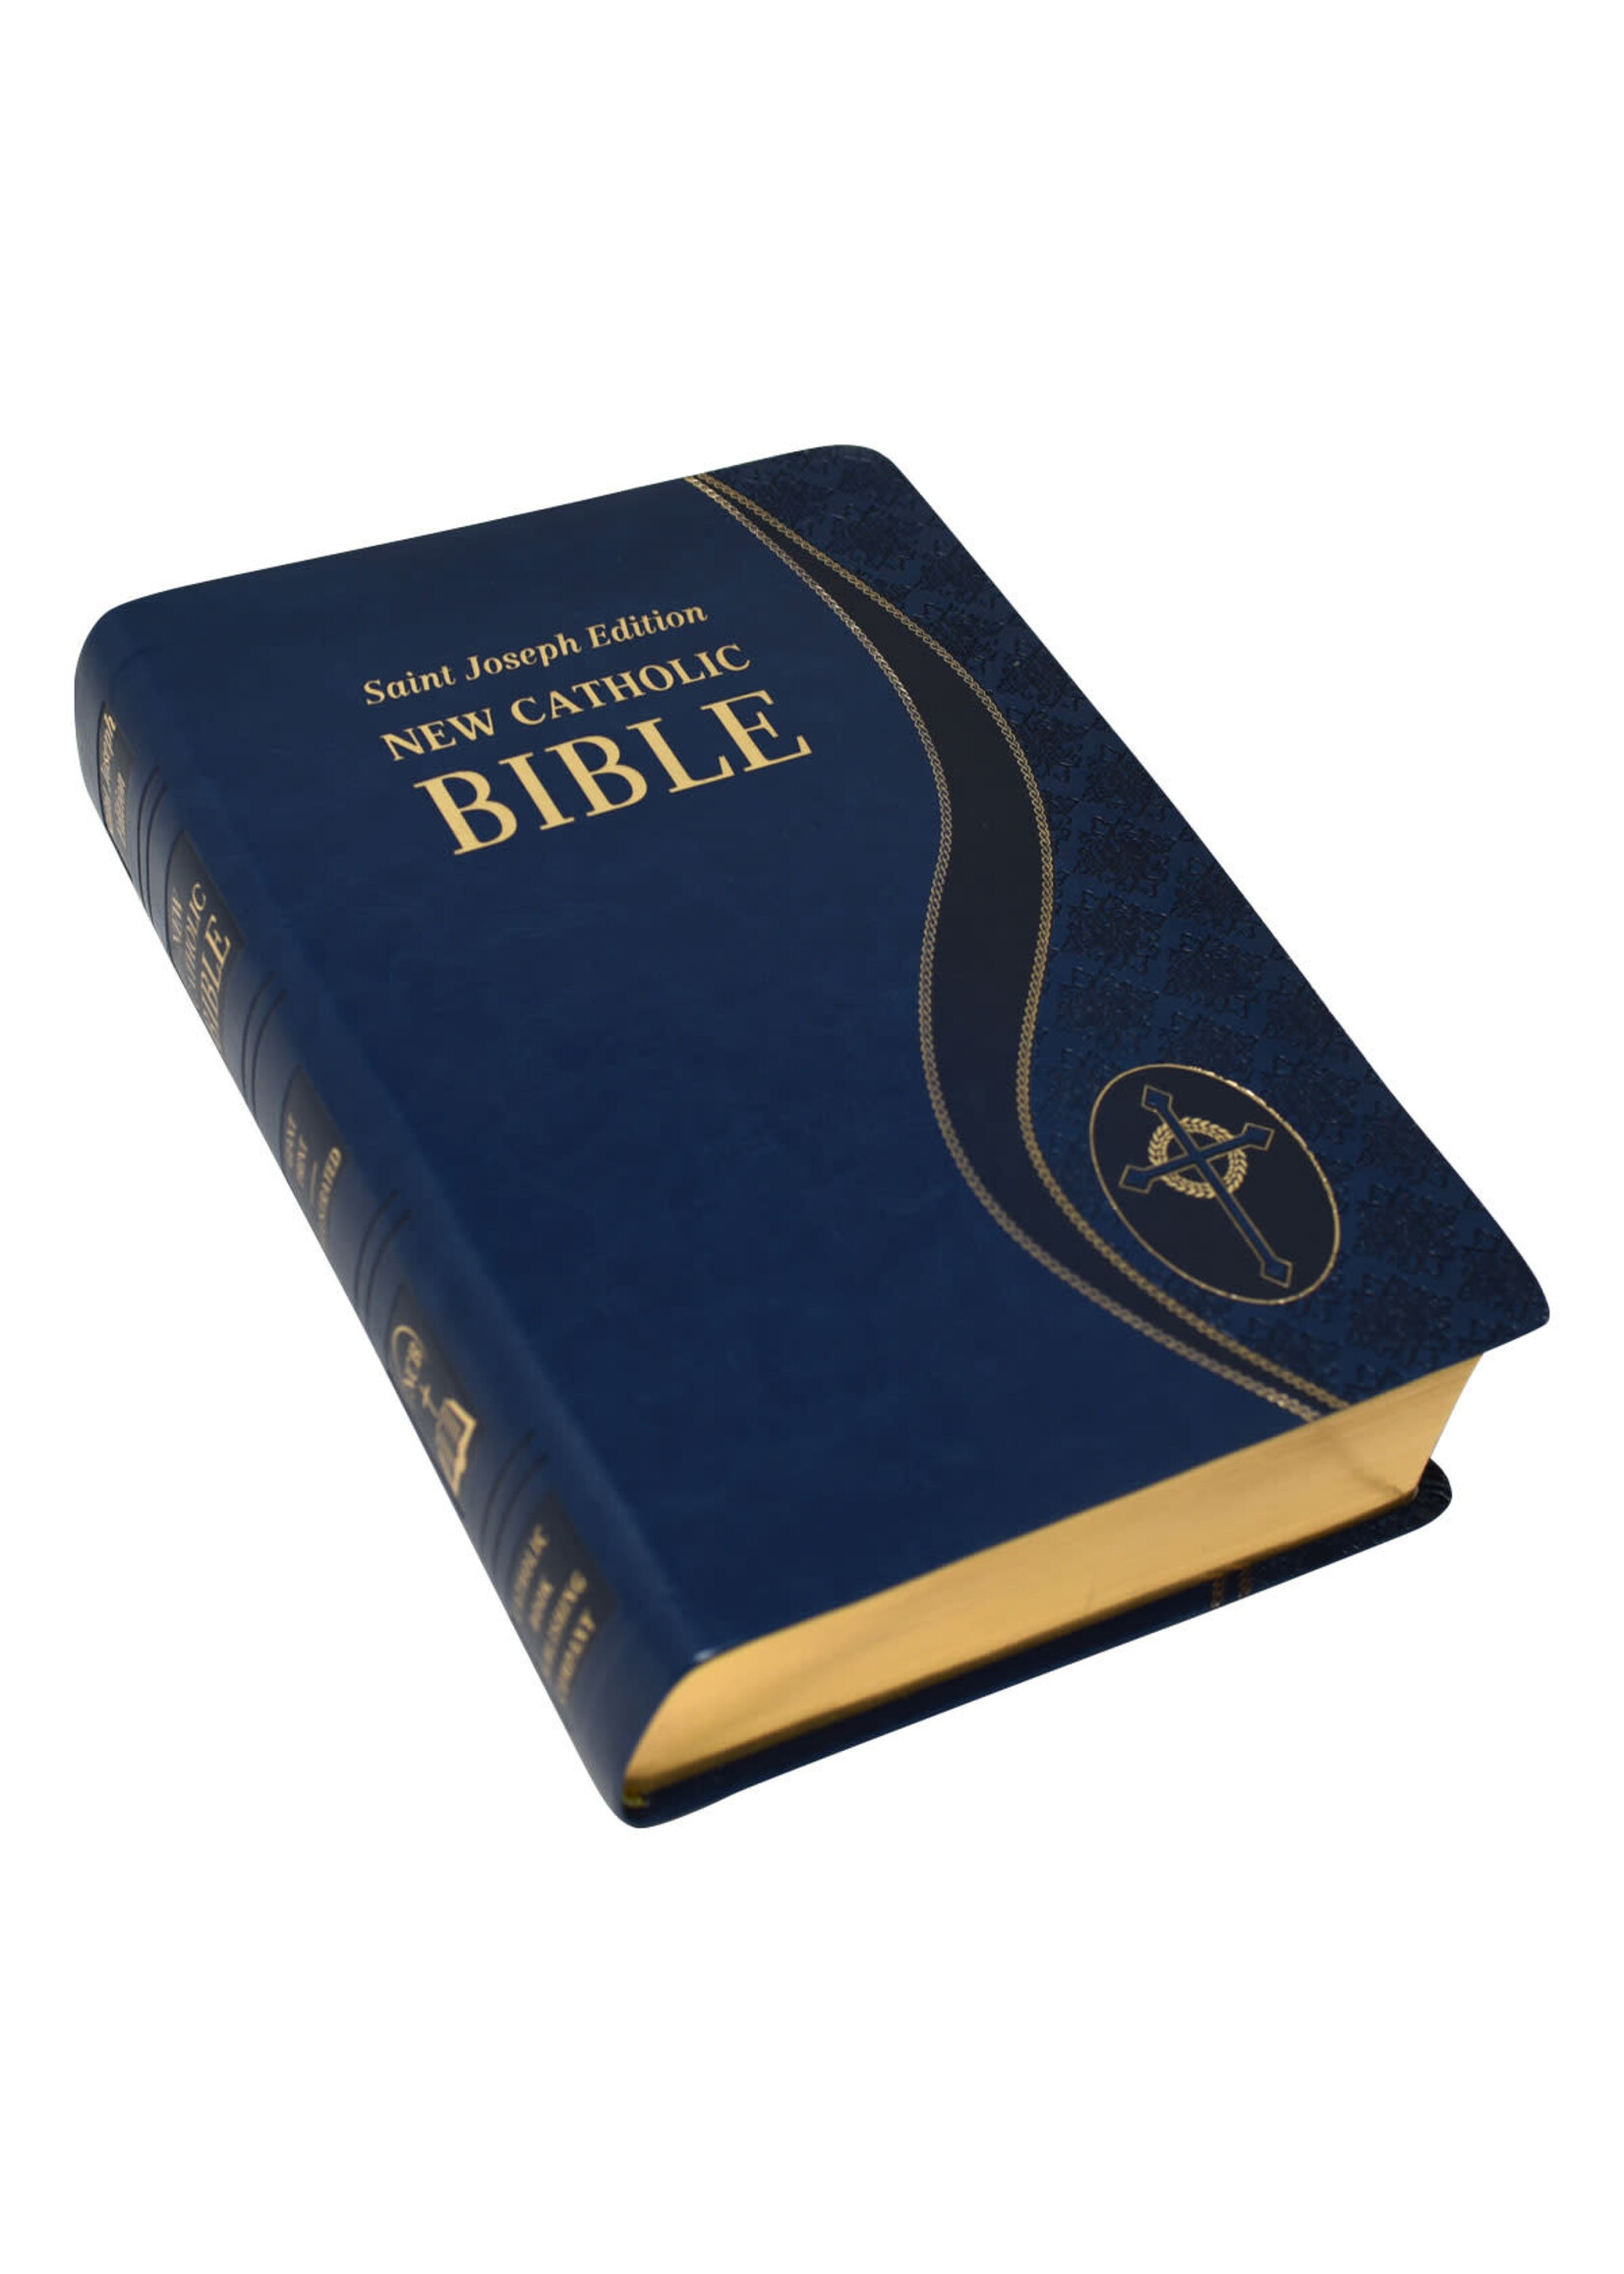 St Joseph New Catholic Bible (Giant Type)